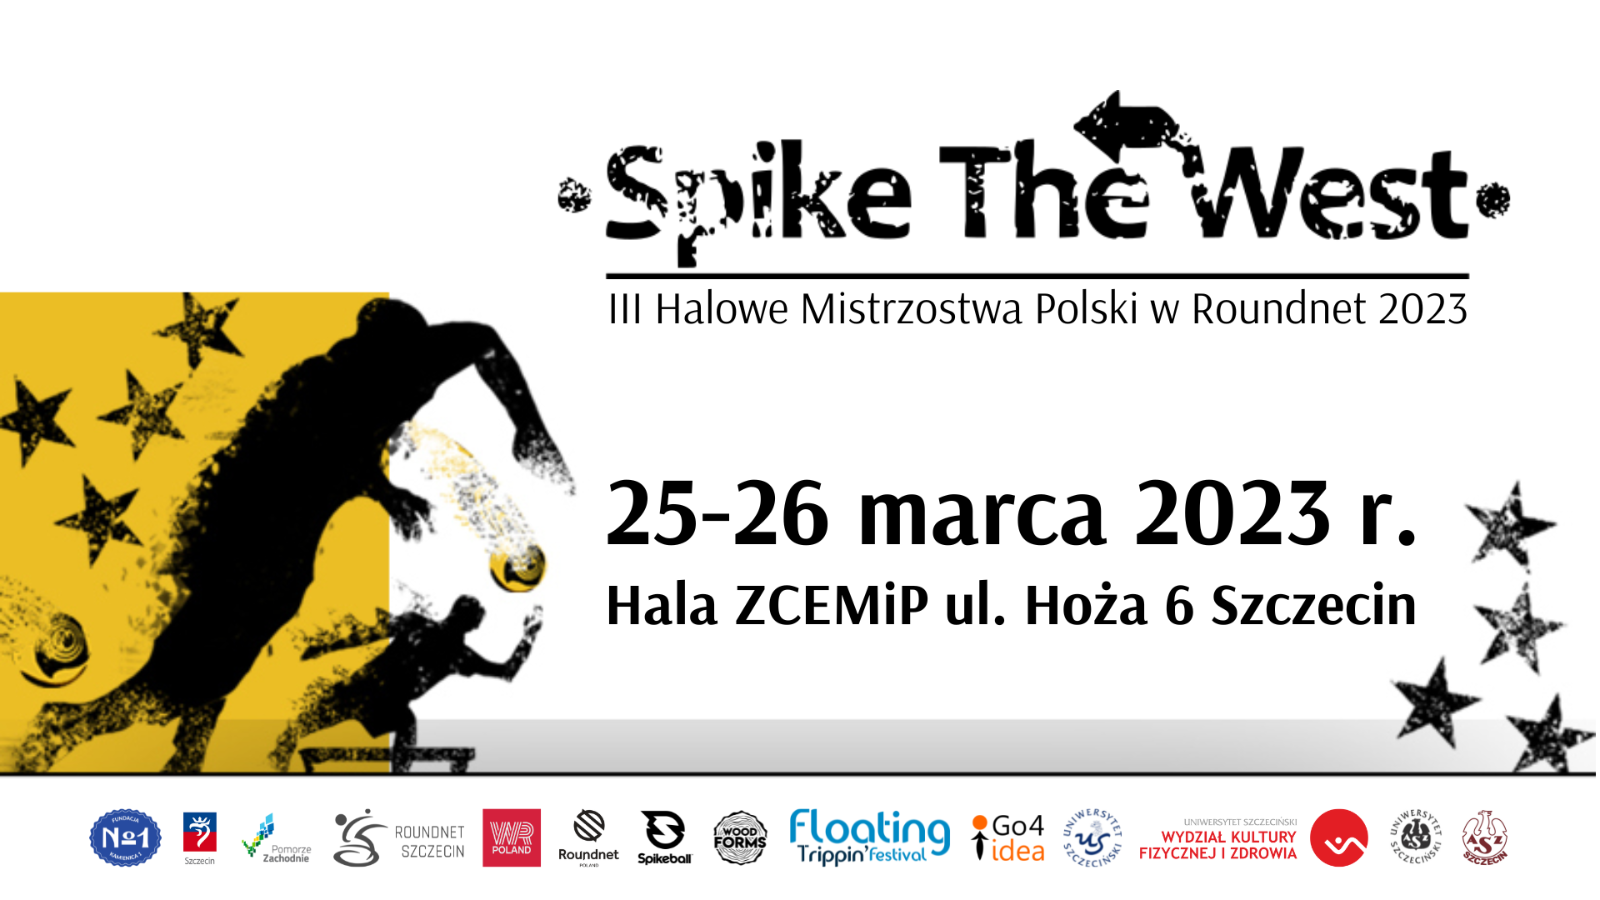 Spike The West - III Halowe Mistrzostwa Polski w Roundnet 2023 - Grafika (1920px X 1080px).png